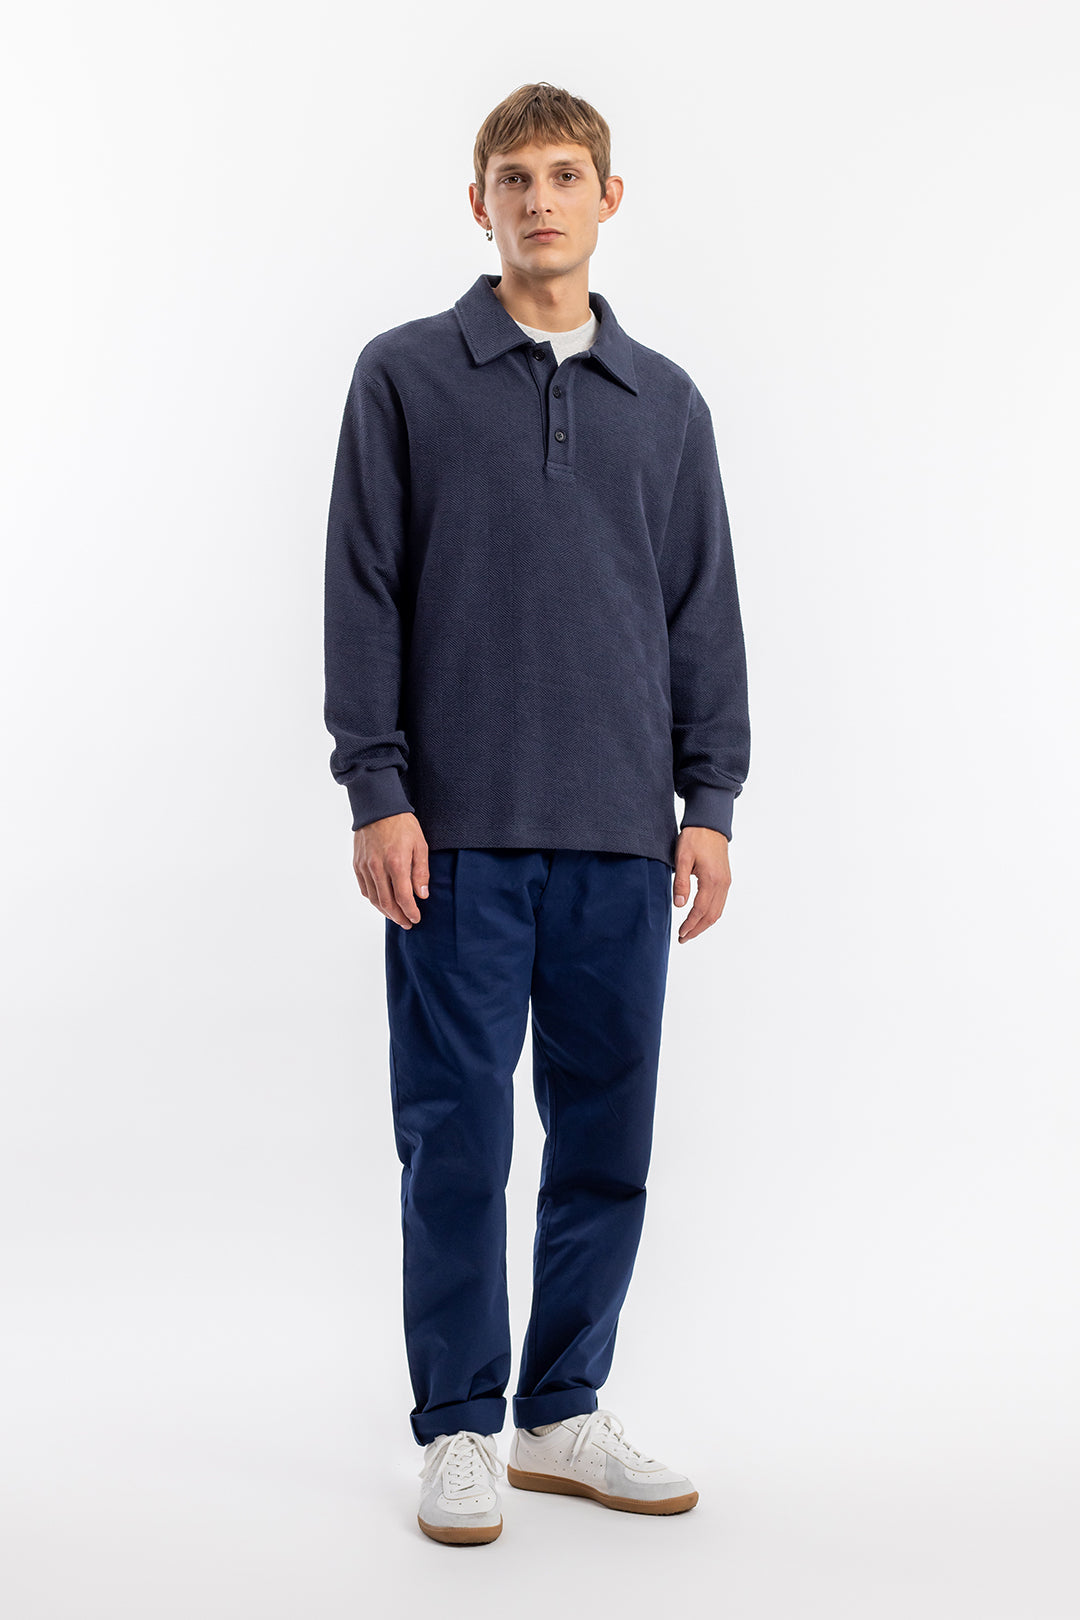 Dunkelblaues, langärmliges Polo Shirt aus Bio-Baumwolle von Rotholz